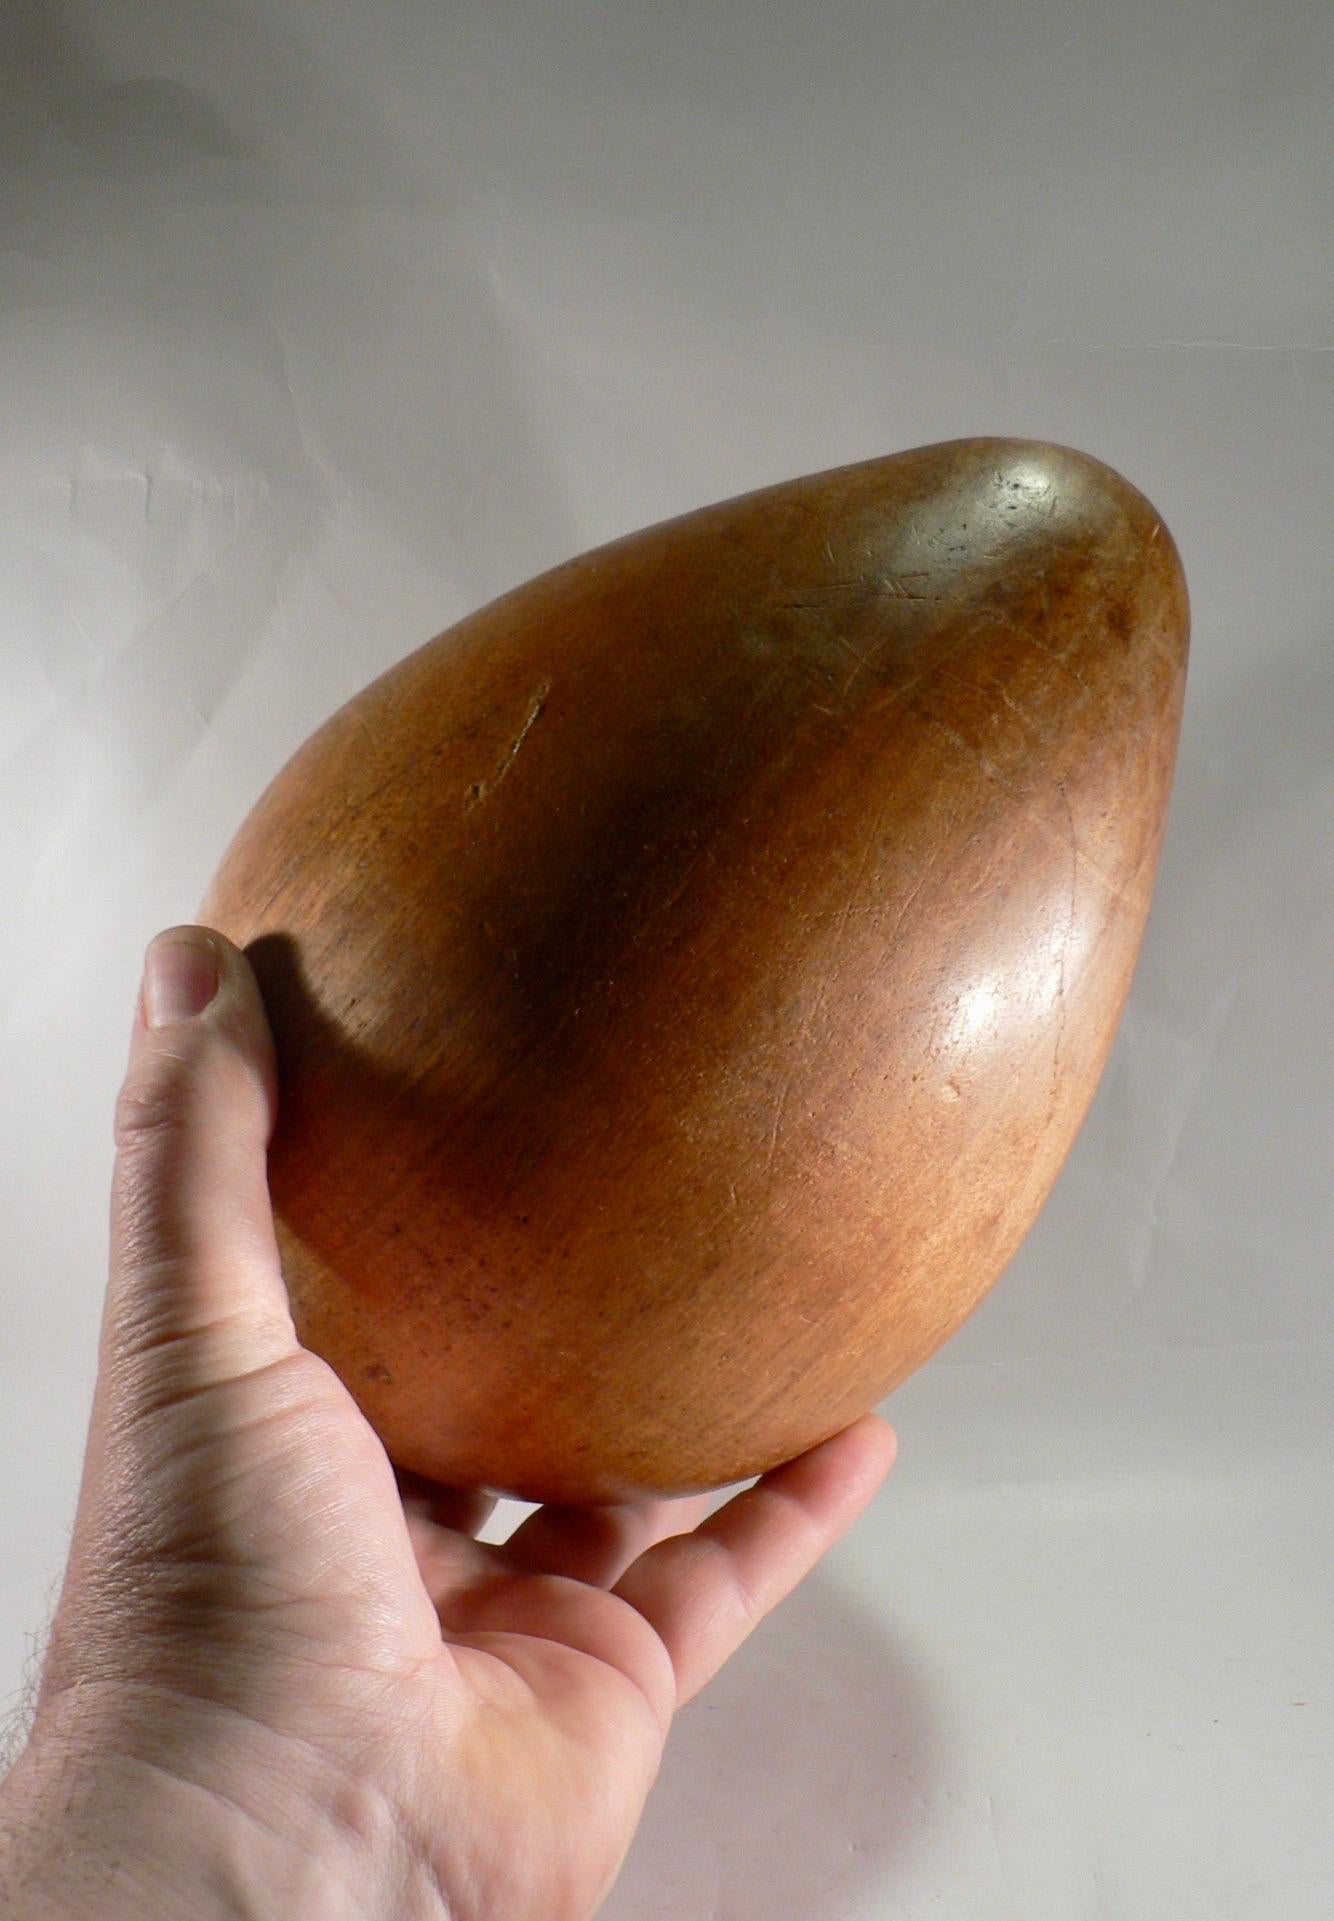 Un œuf en bois sculpté, probablement fabriqué en France dans les années 1950. Ce type d'objet était populaire à l'époque et est souvent considéré comme un bel objet décoratif. Les Eleg sculptés étaient souvent fabriqués à la main, généralement